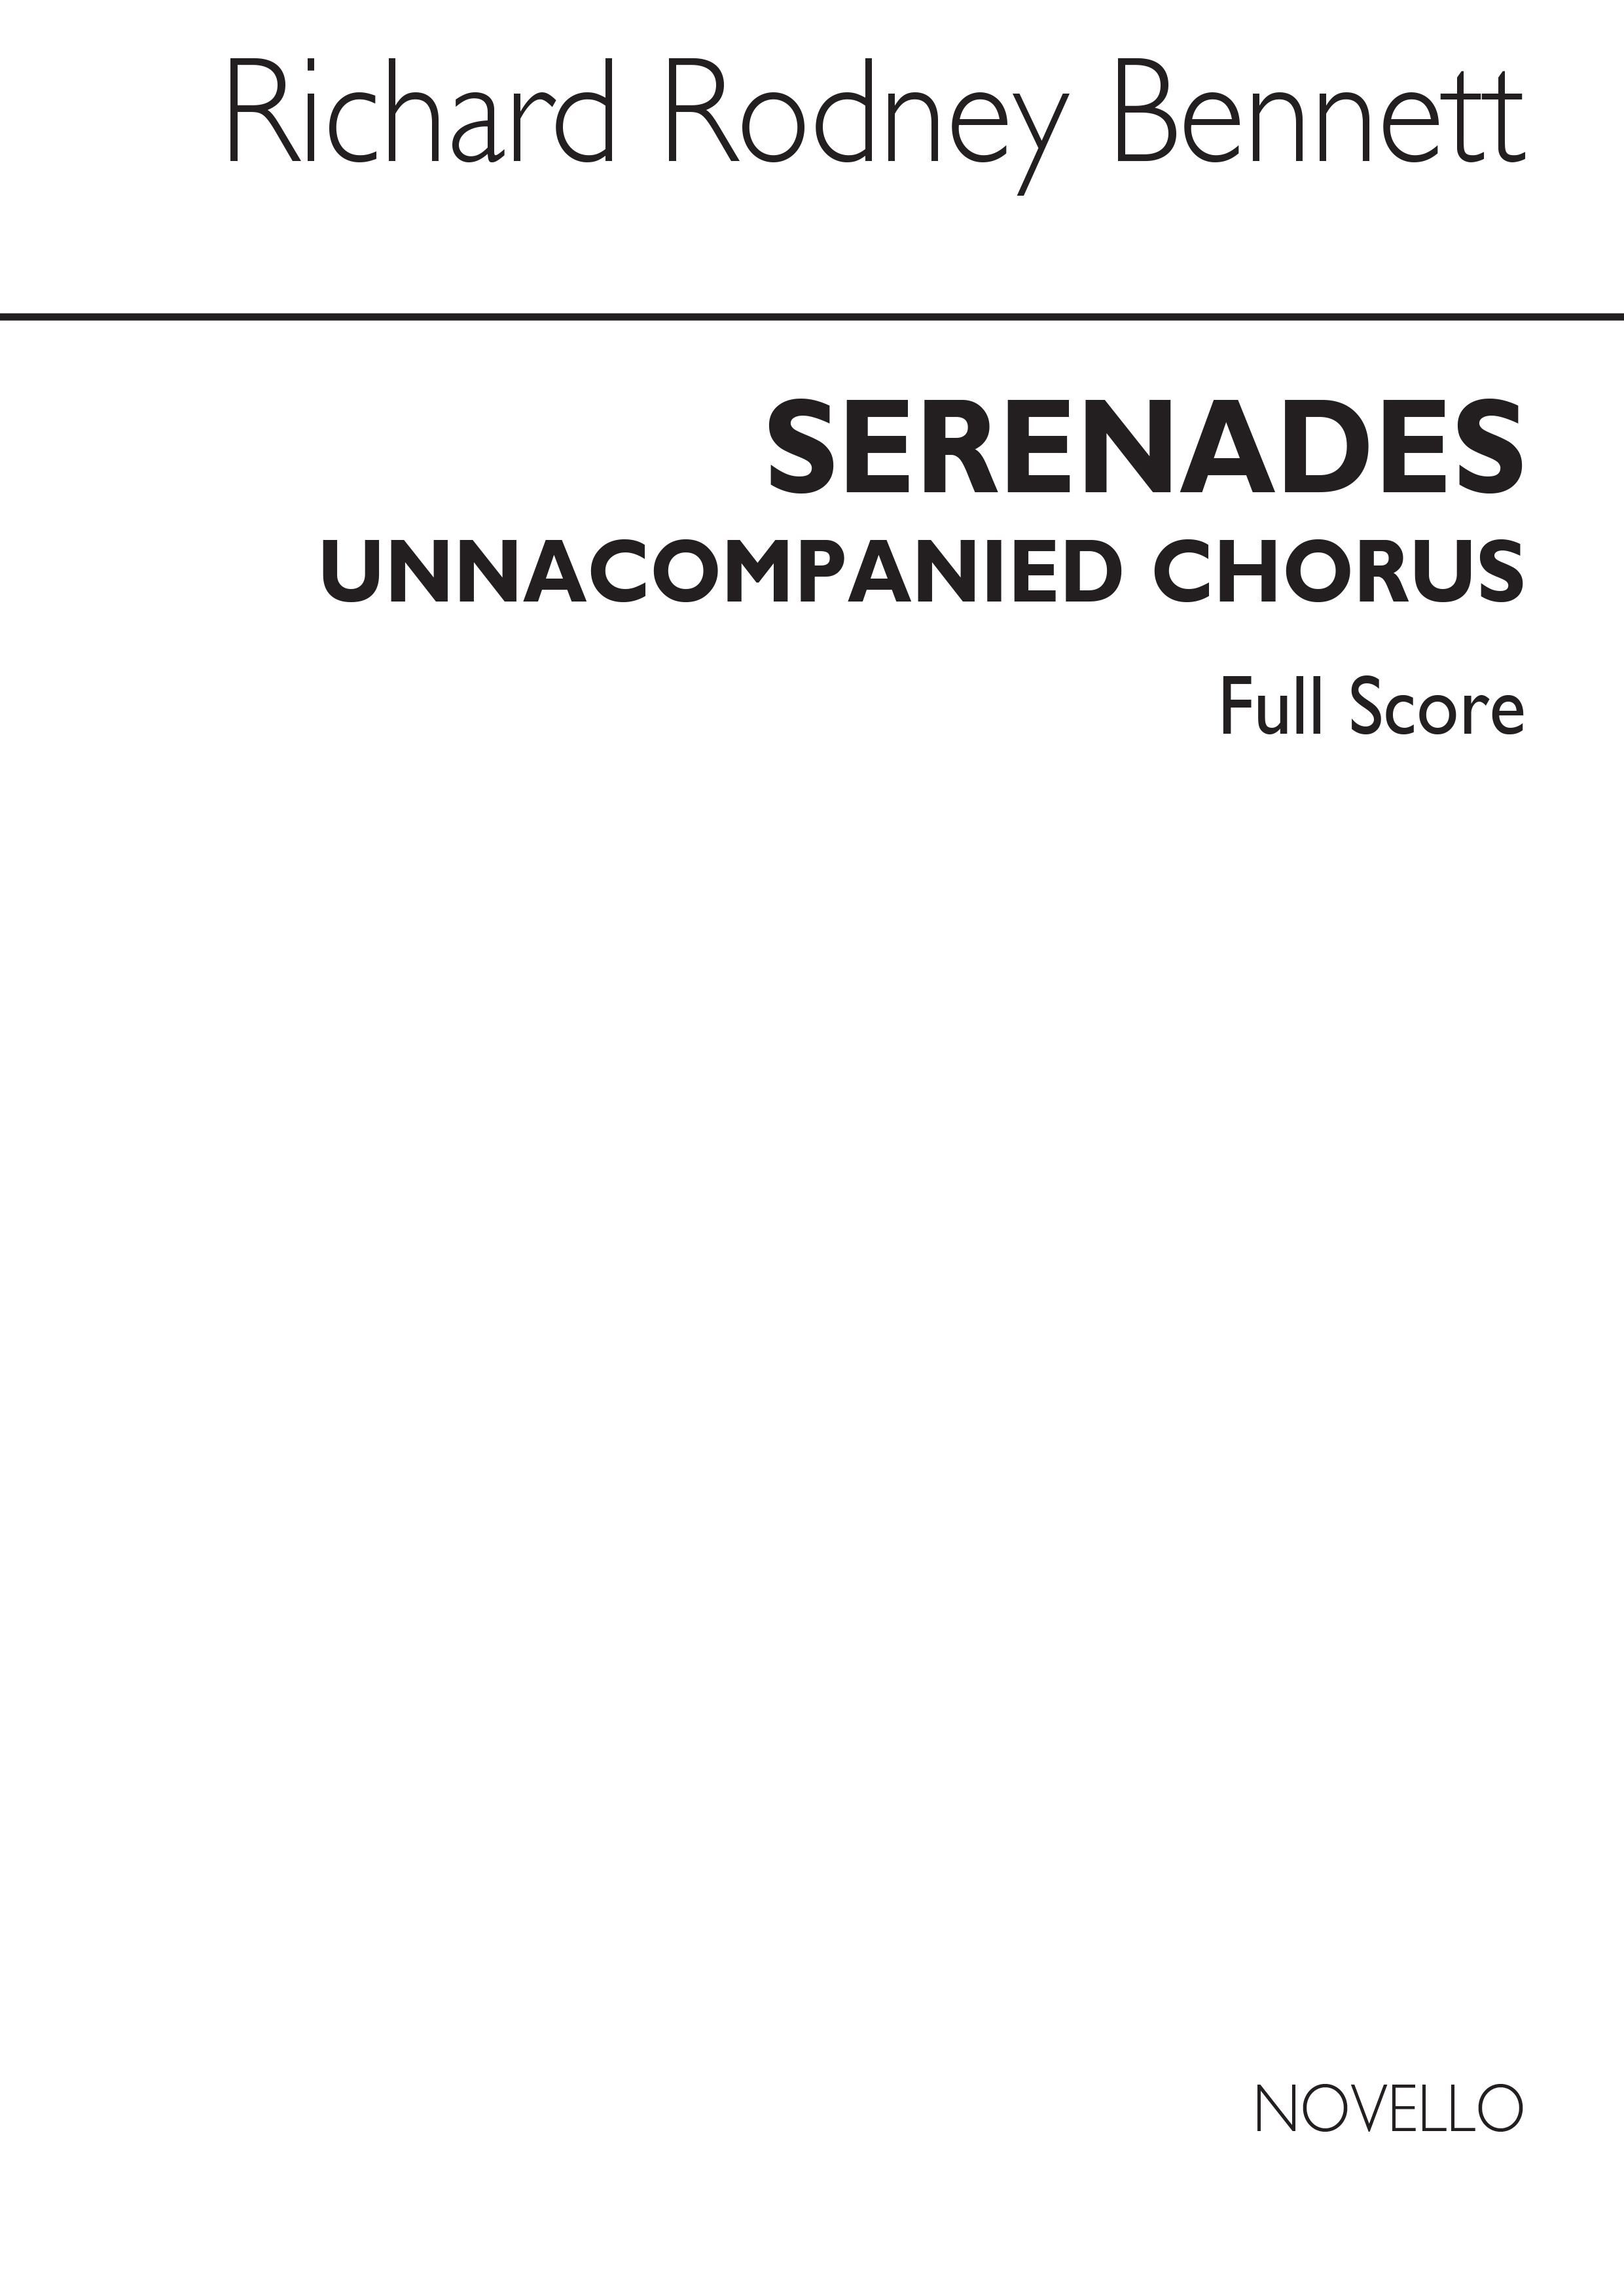 Richard Rodney Bennett: Serenades